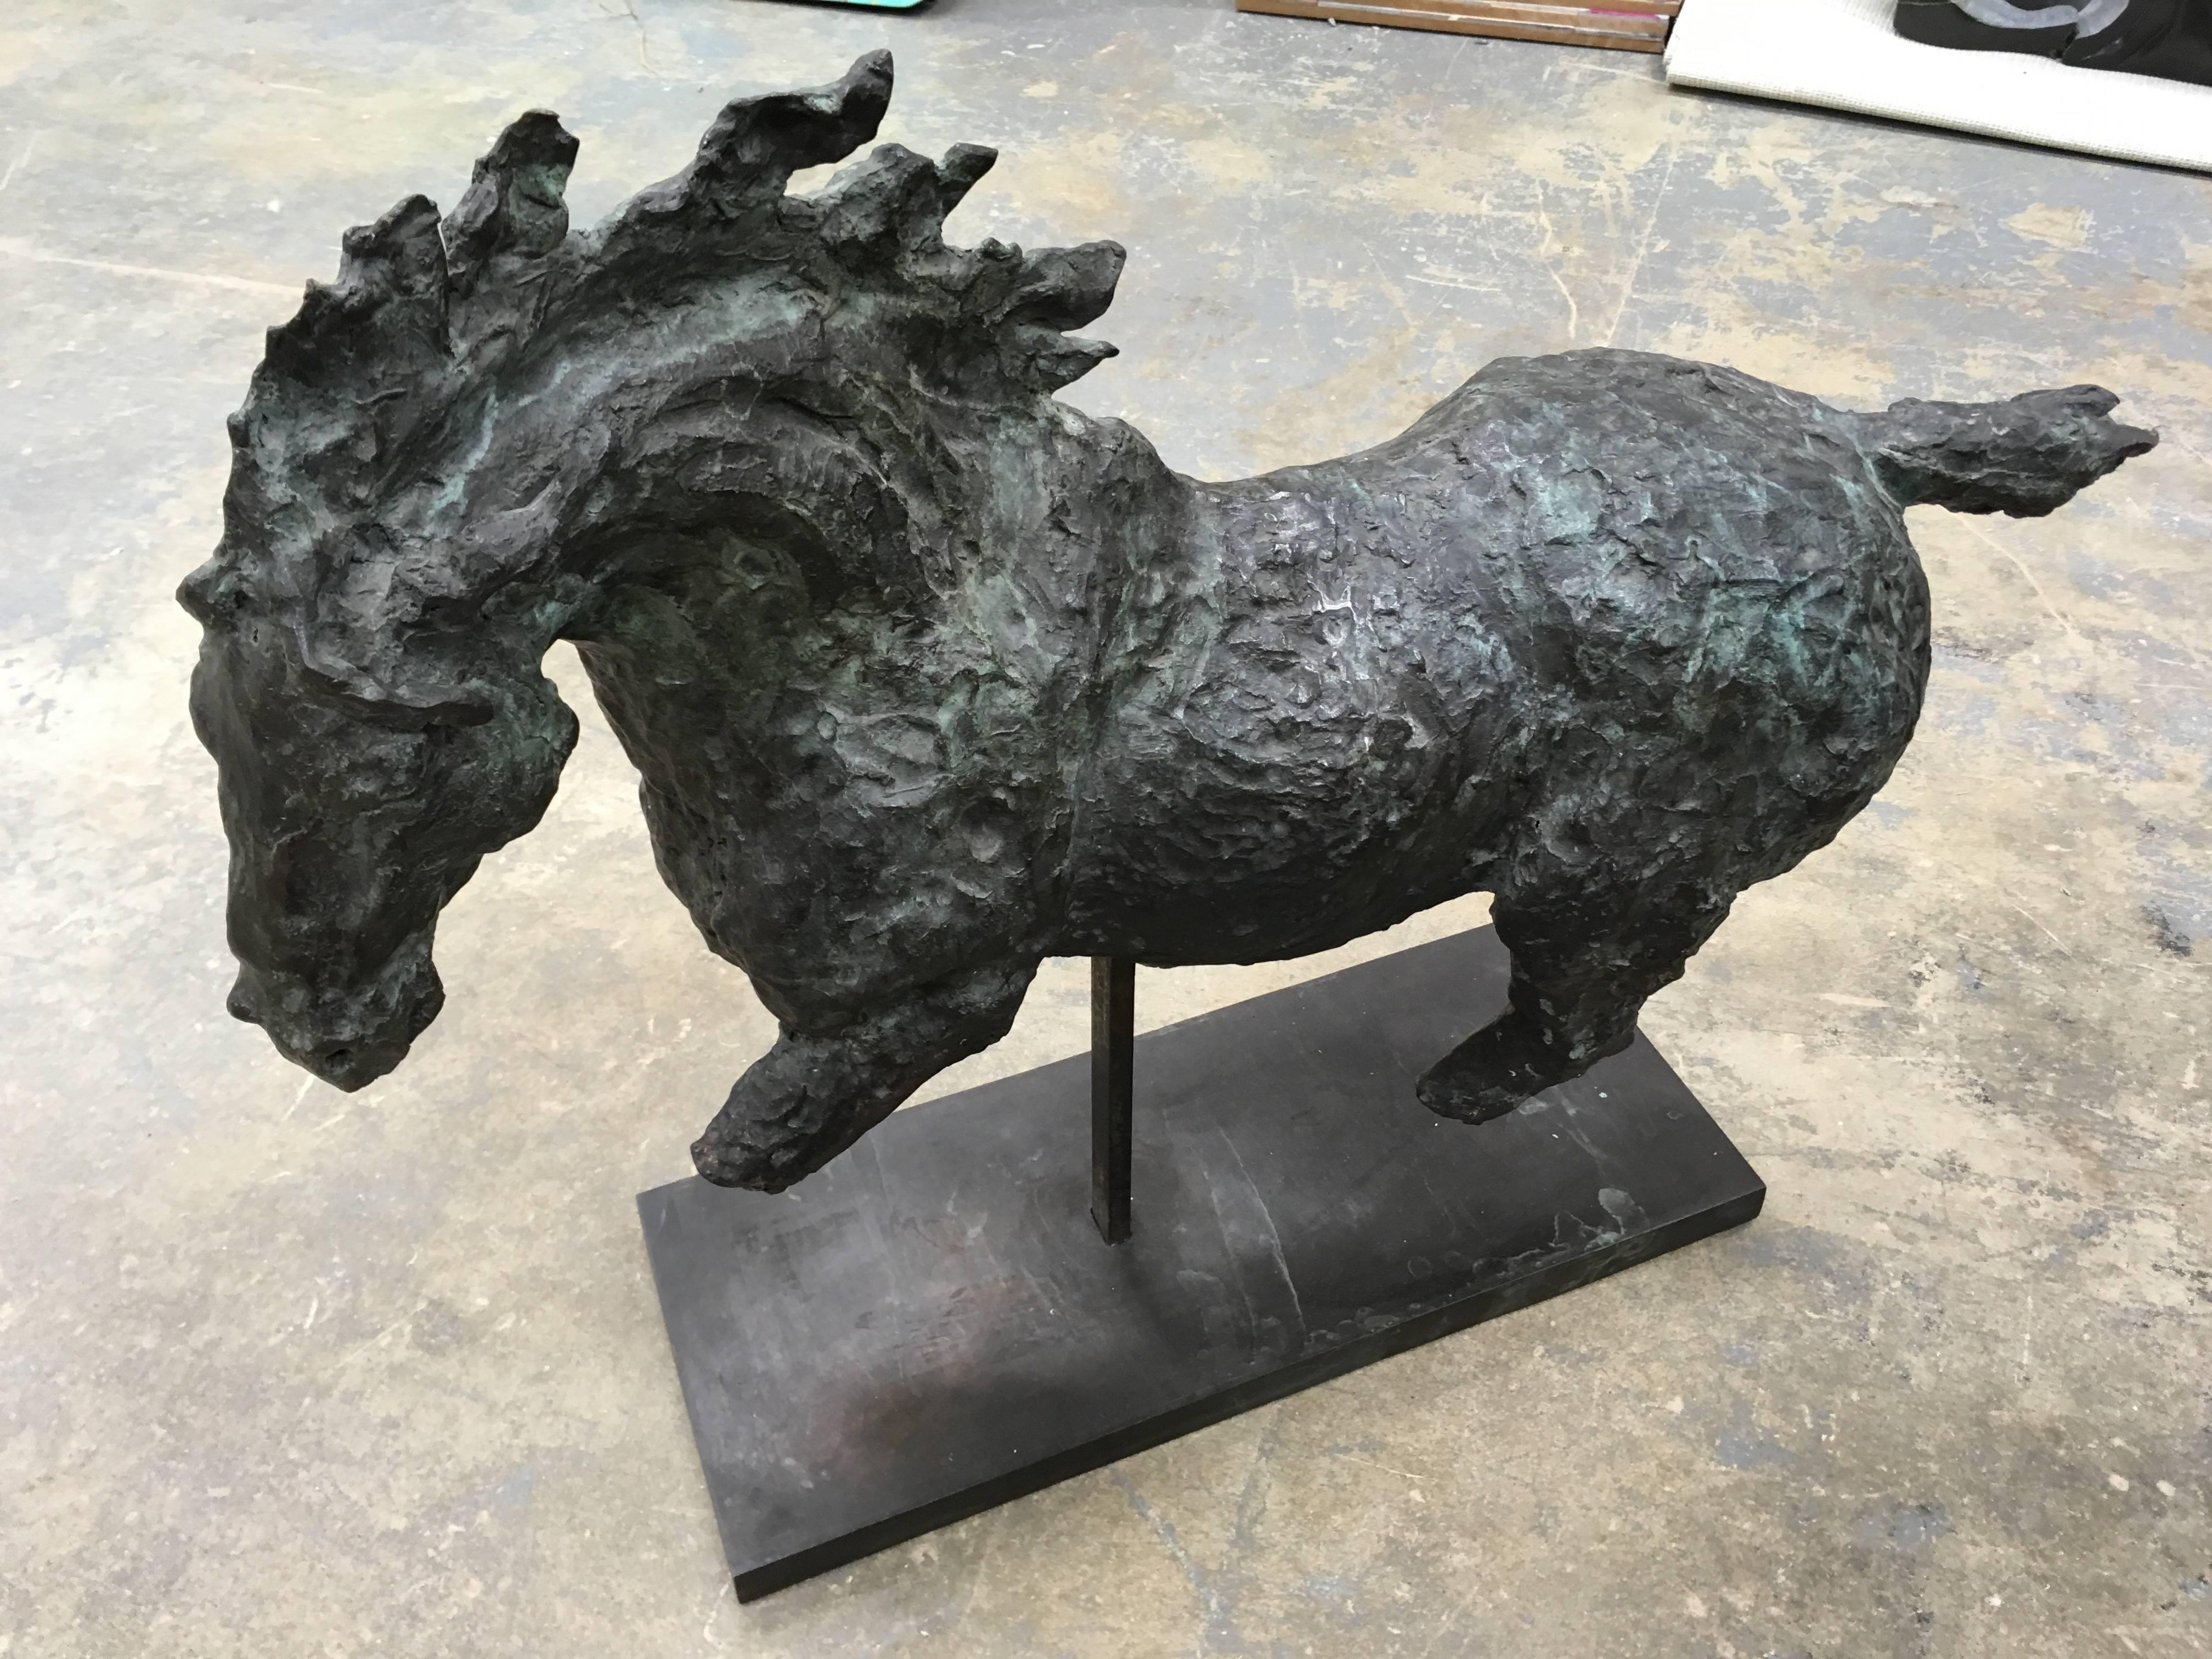 Lina Binkele Figurative Sculpture - Galloping Horse